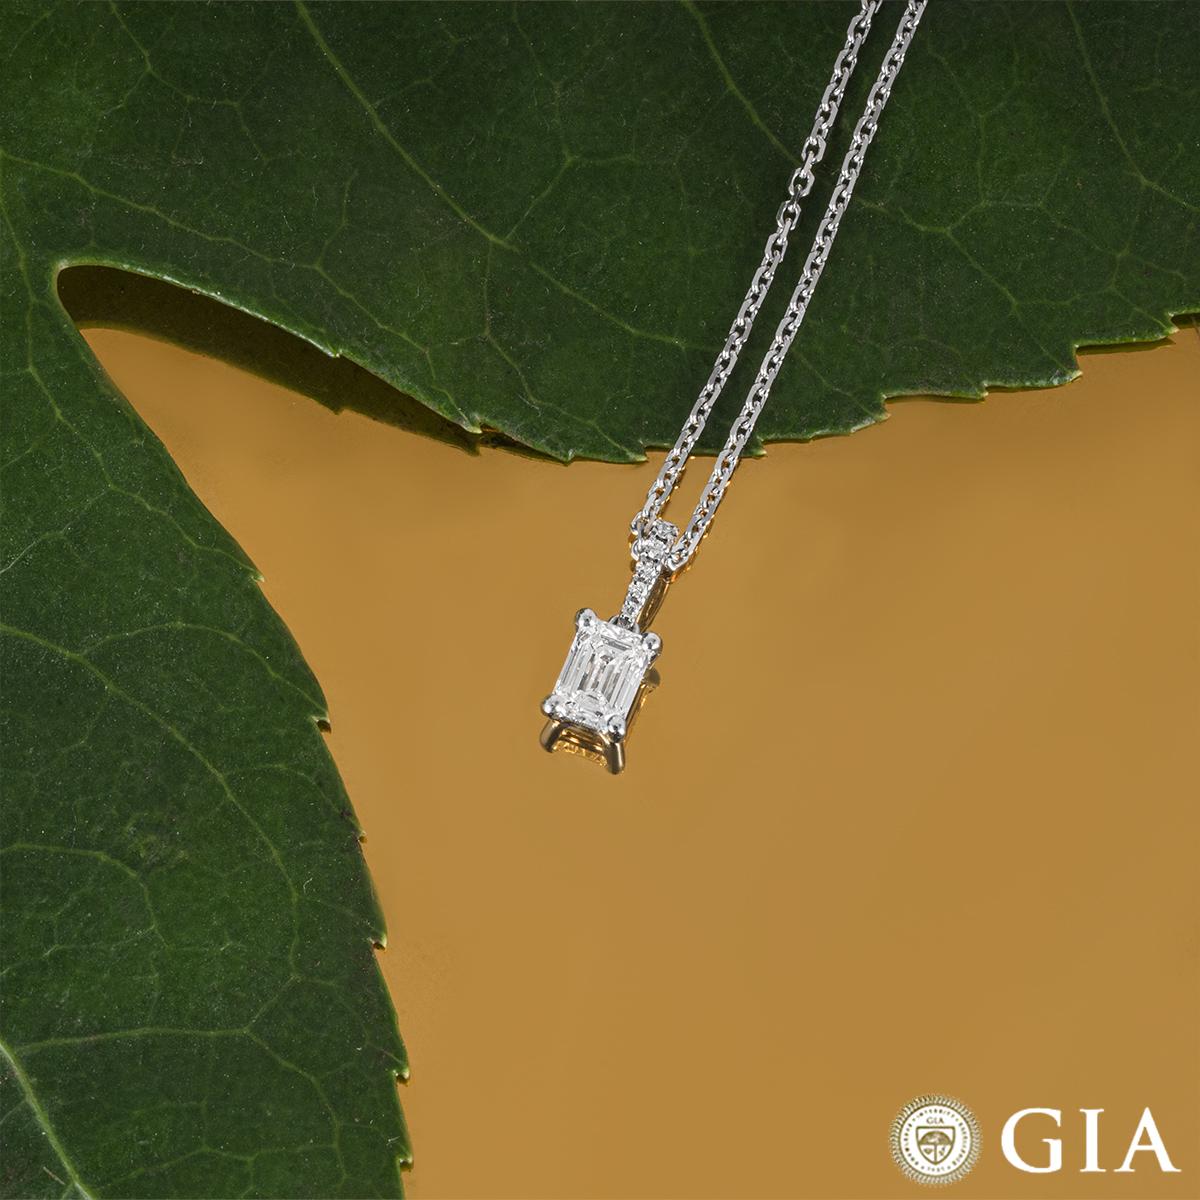 GIA Certified Emerald Cut Diamond Pendant 0.41 Carat E/SI1 For Sale 3